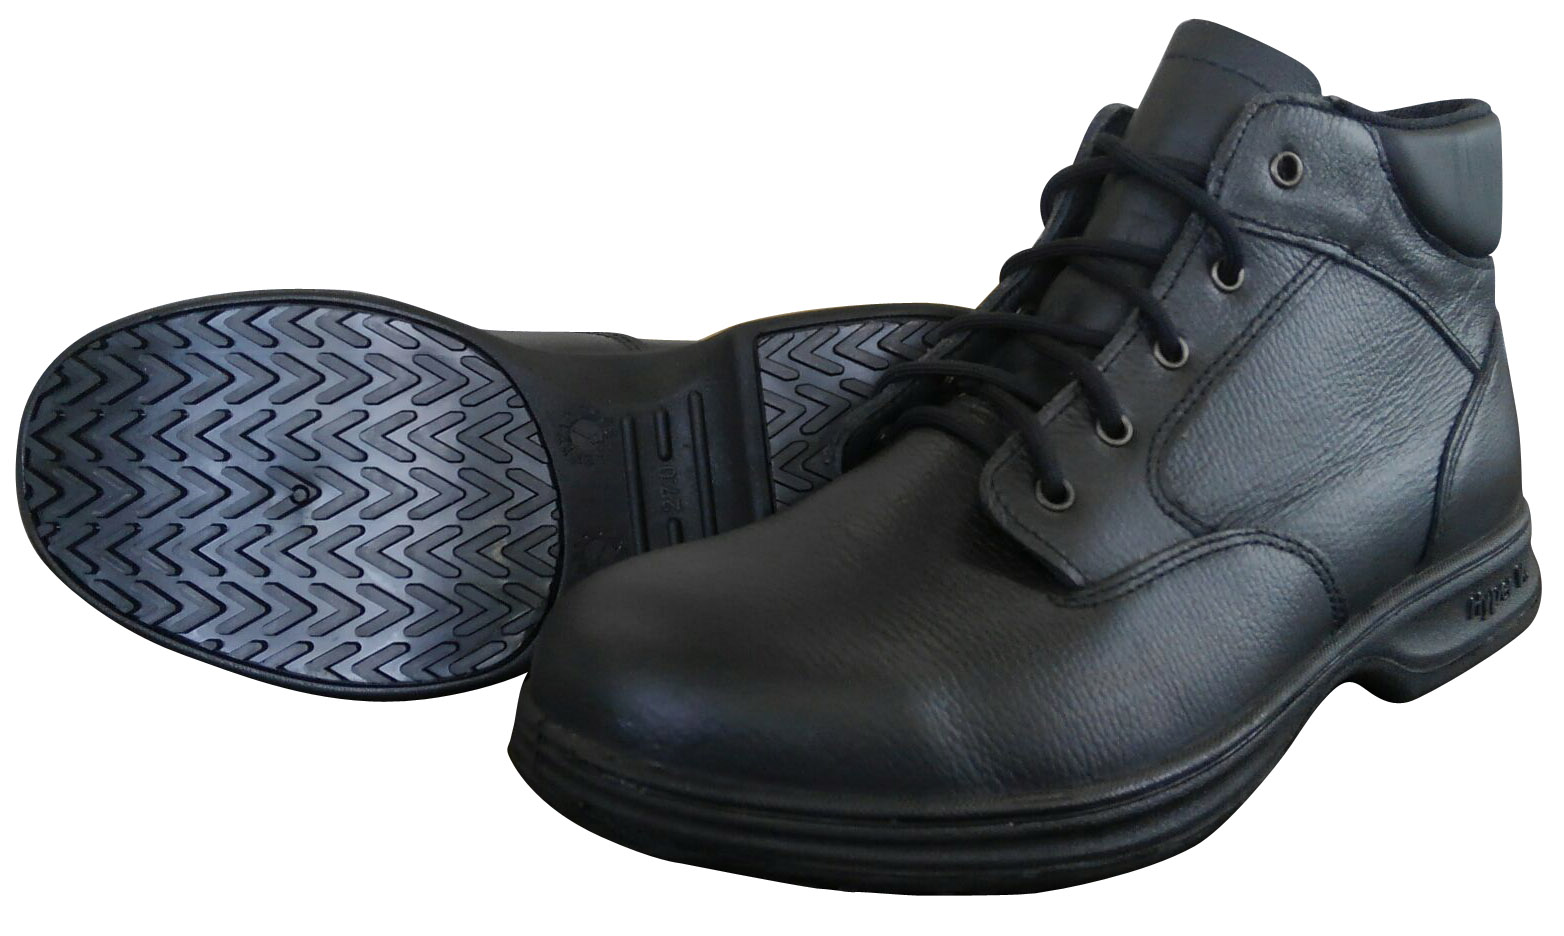 ドンケル 安全靴 半長靴 チャック付 JIS T8101革製S種合格(V式) 606T メンズ ブラック 28.0 cm - 1